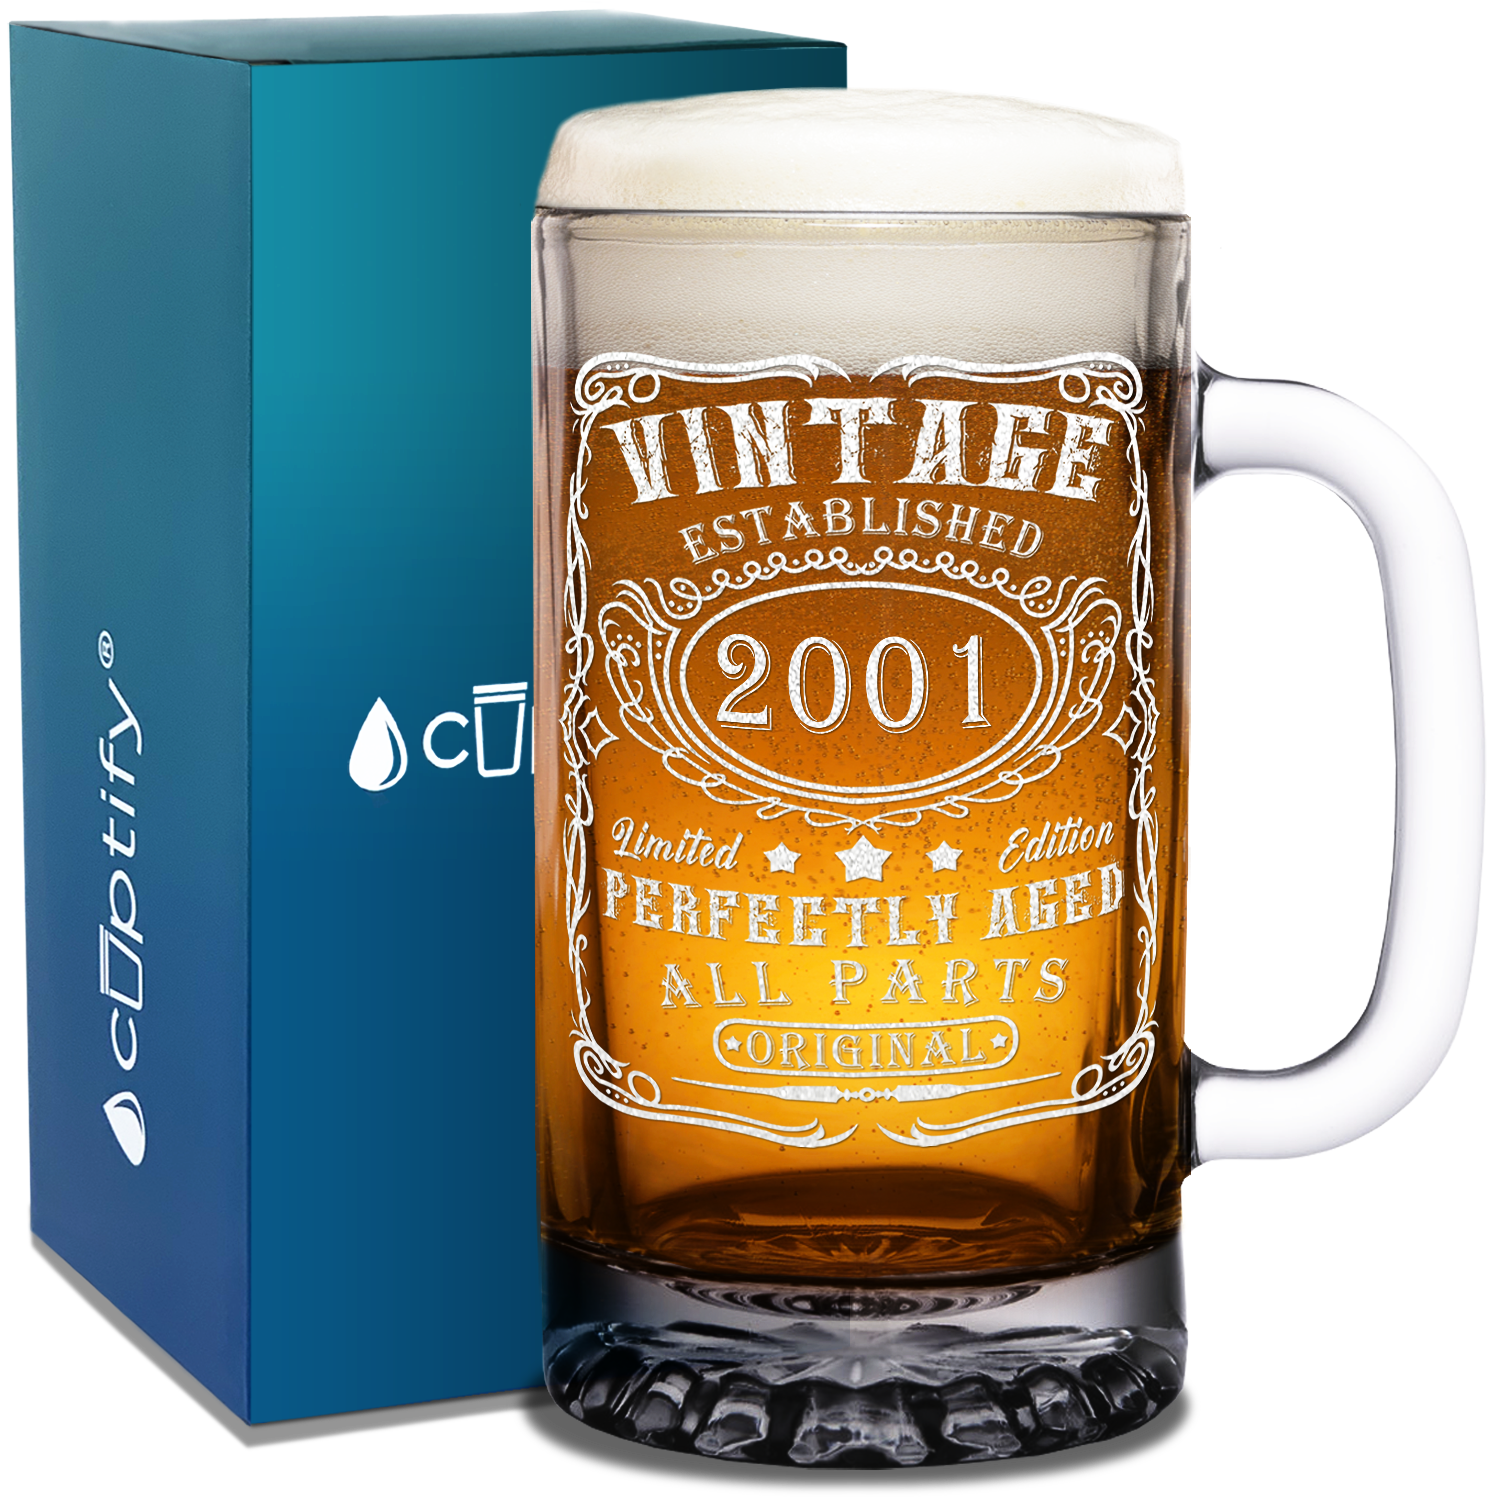 21st Birthday Gift Vintage Established 2001 Etched on 16oz Glass Mug